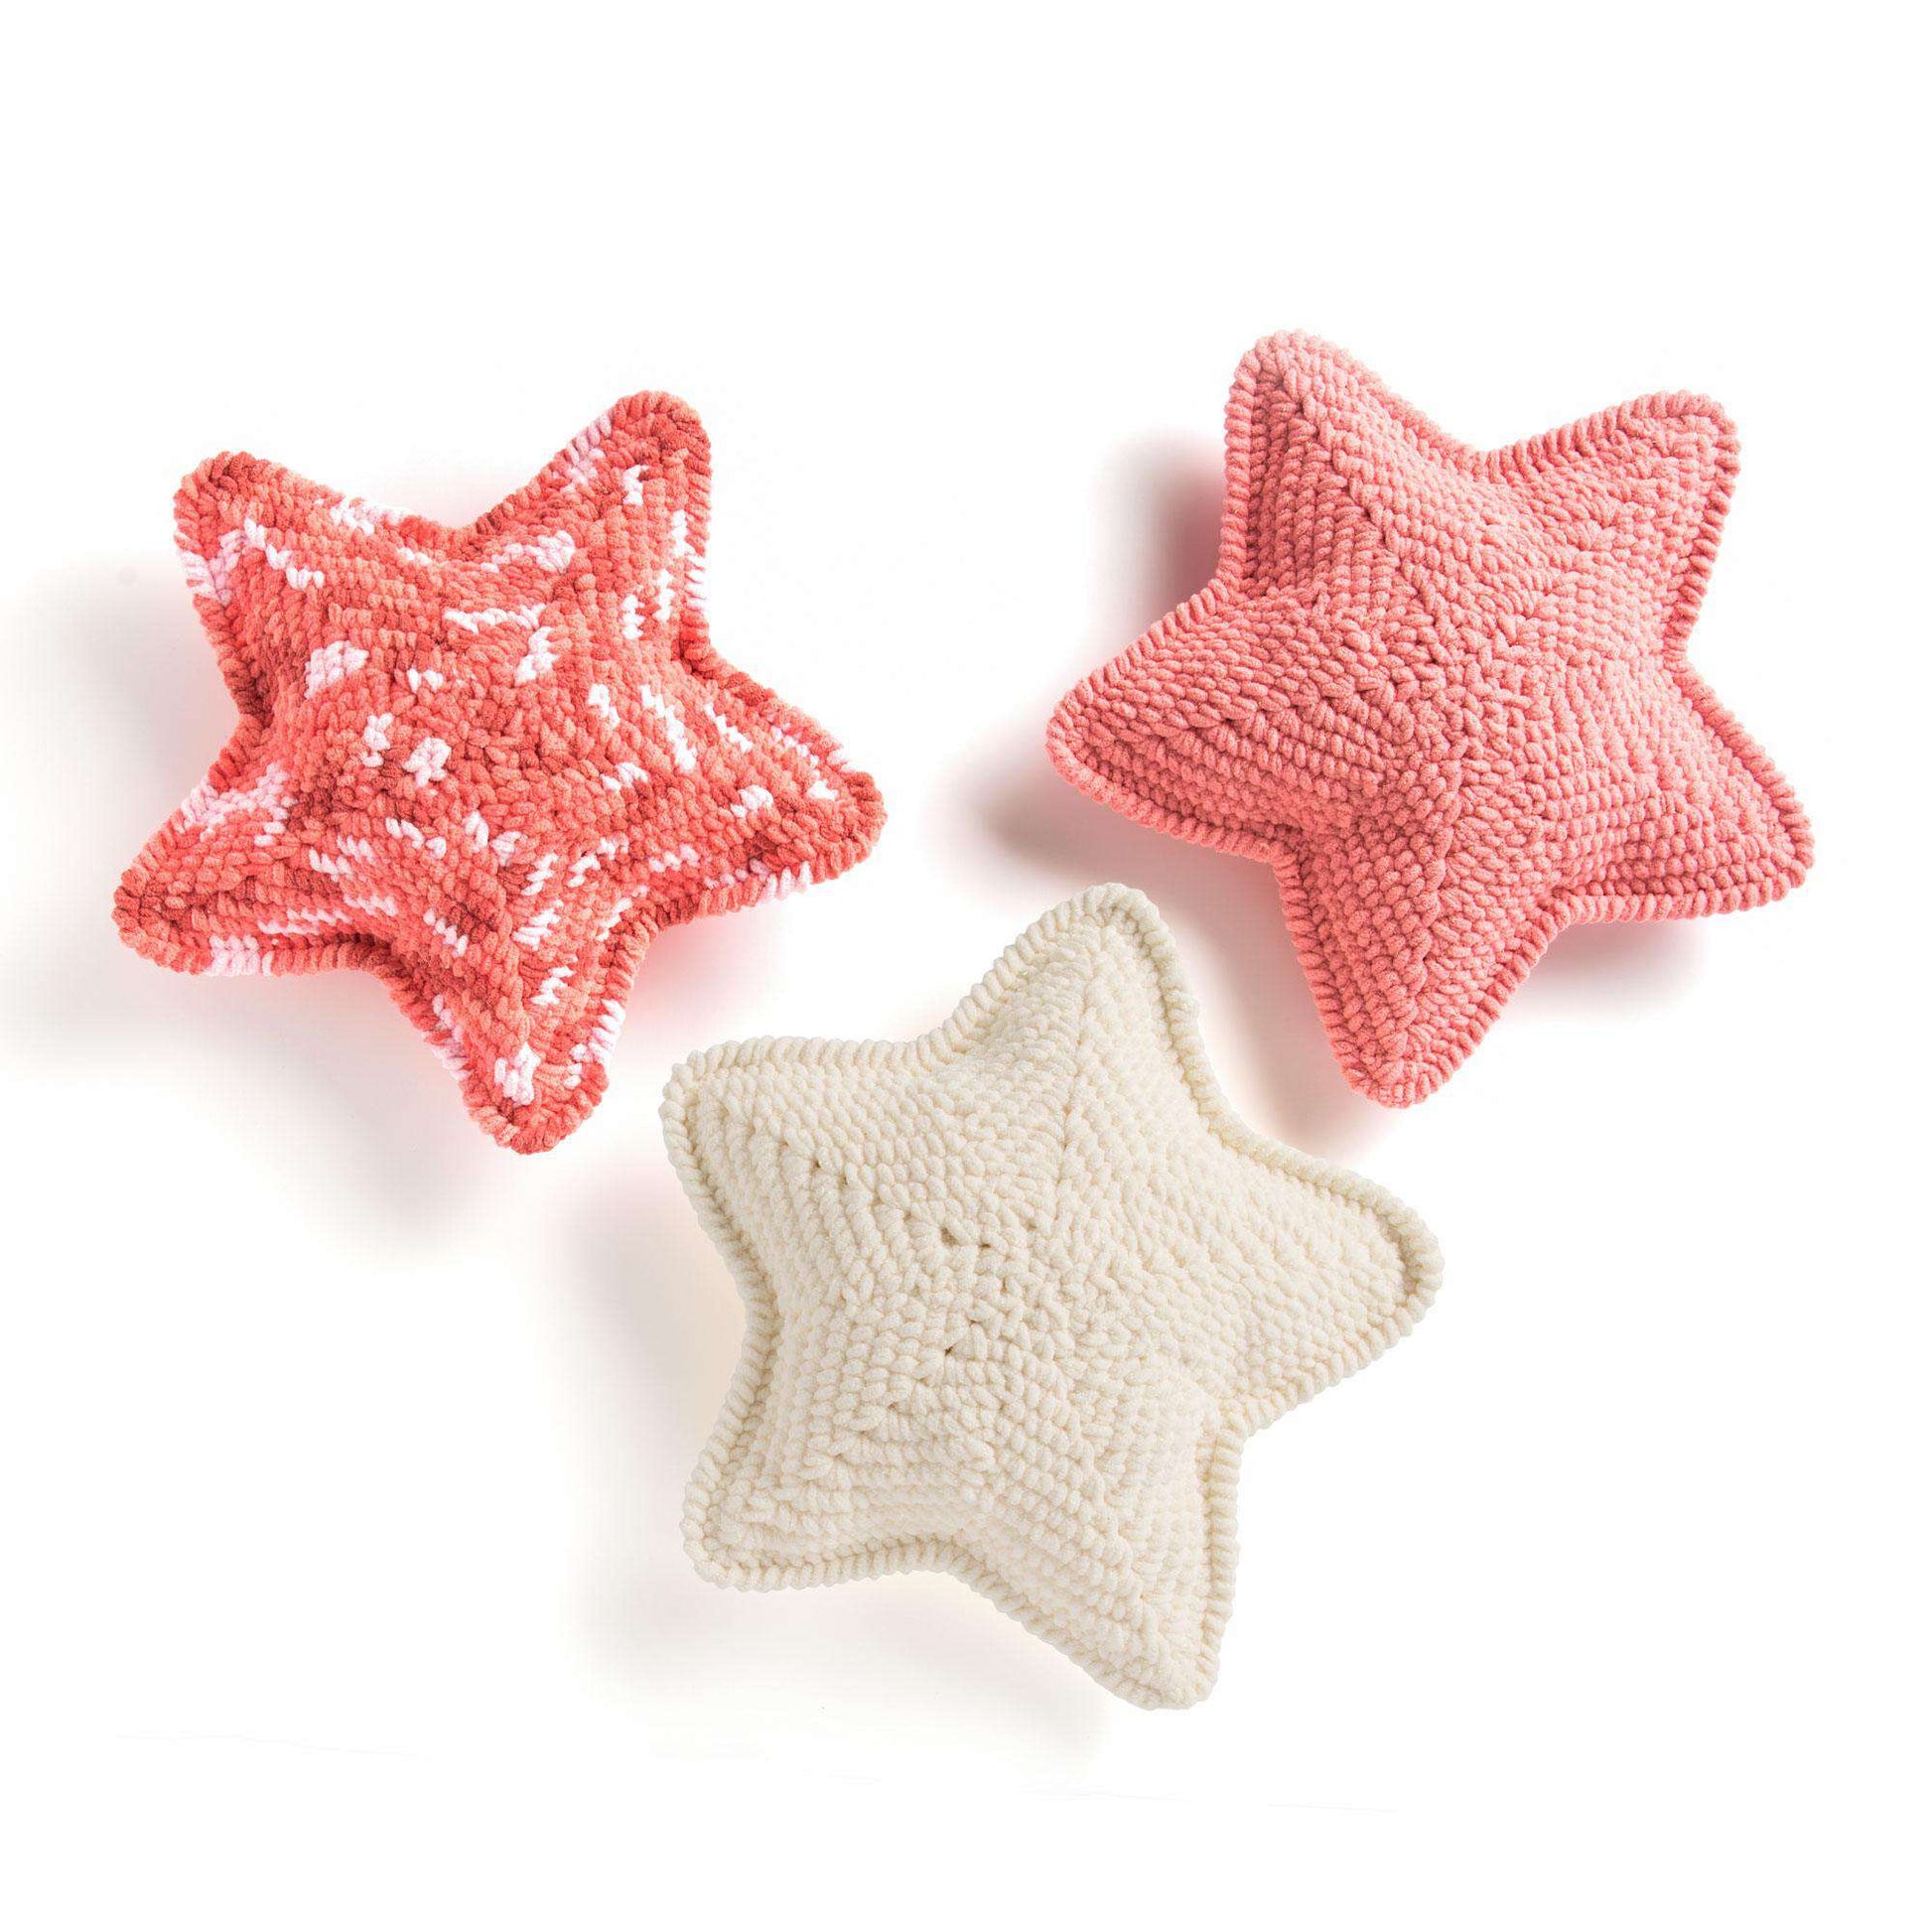 Free Bernat Crochet Lucky Star Pillow Pattern